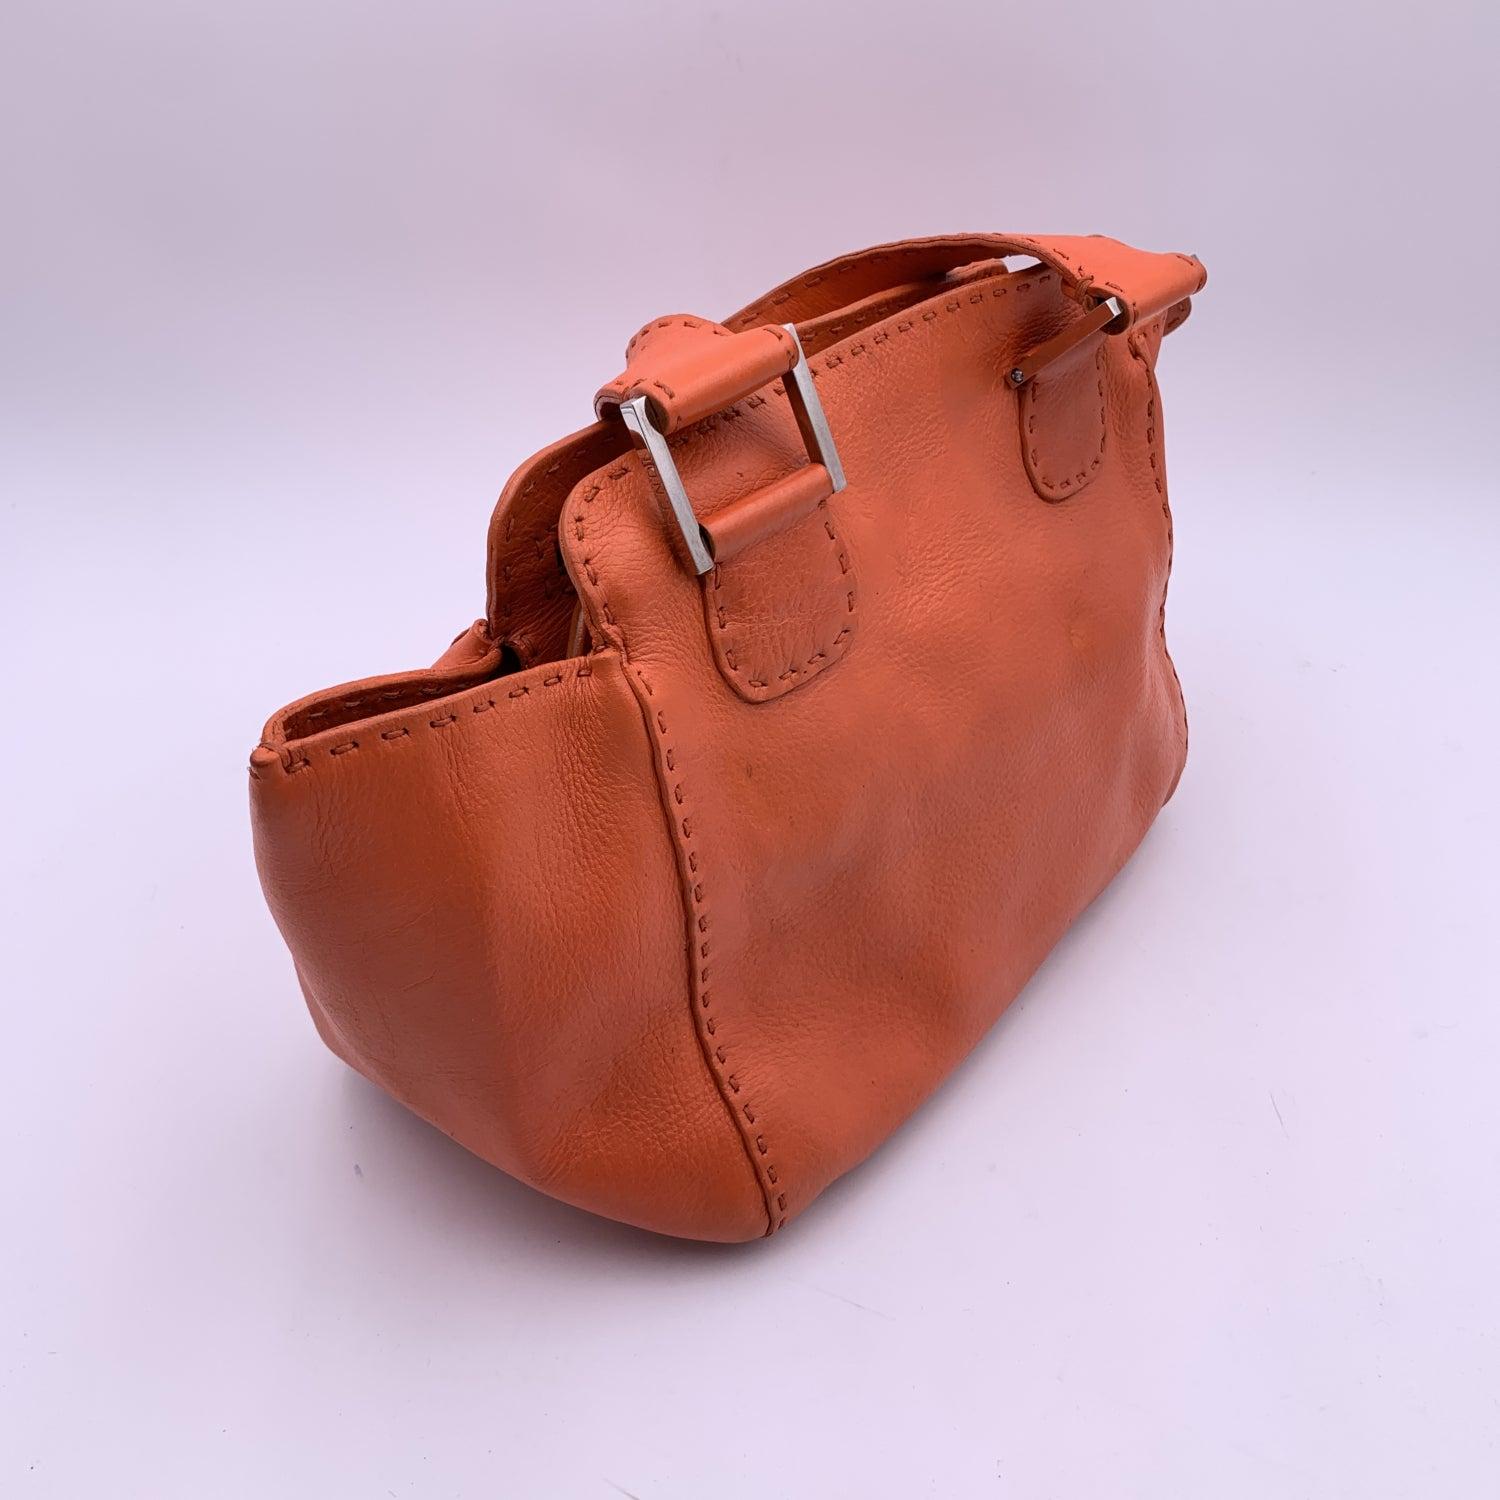 Fendi Selleria Orange Leather Small Tote Handbag Satchel 1